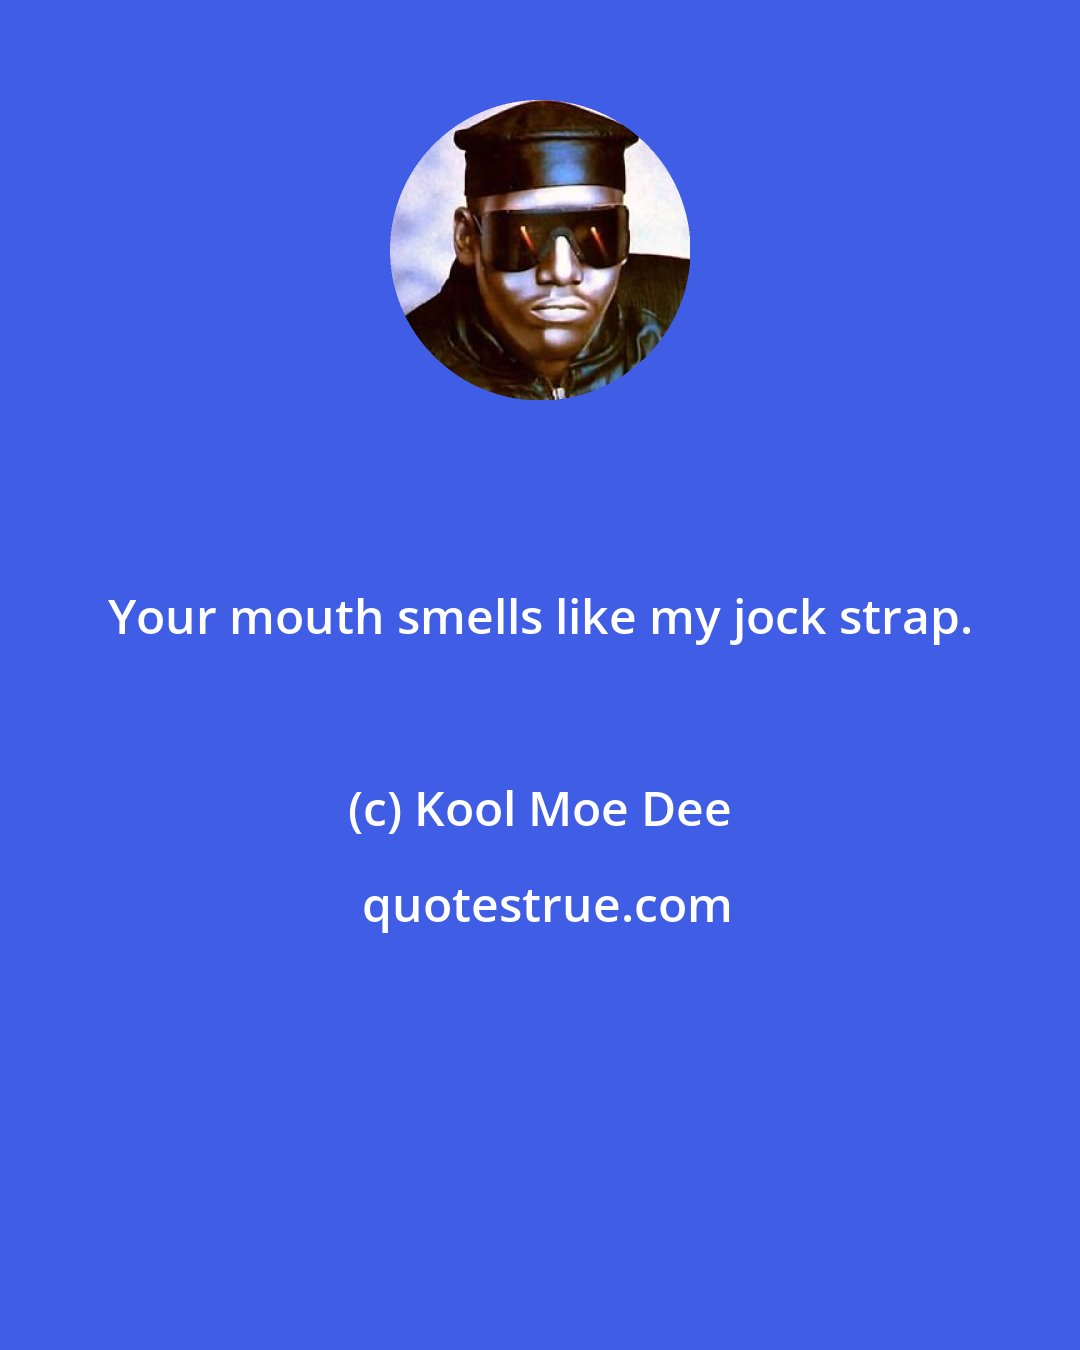 Kool Moe Dee: Your mouth smells like my jock strap.